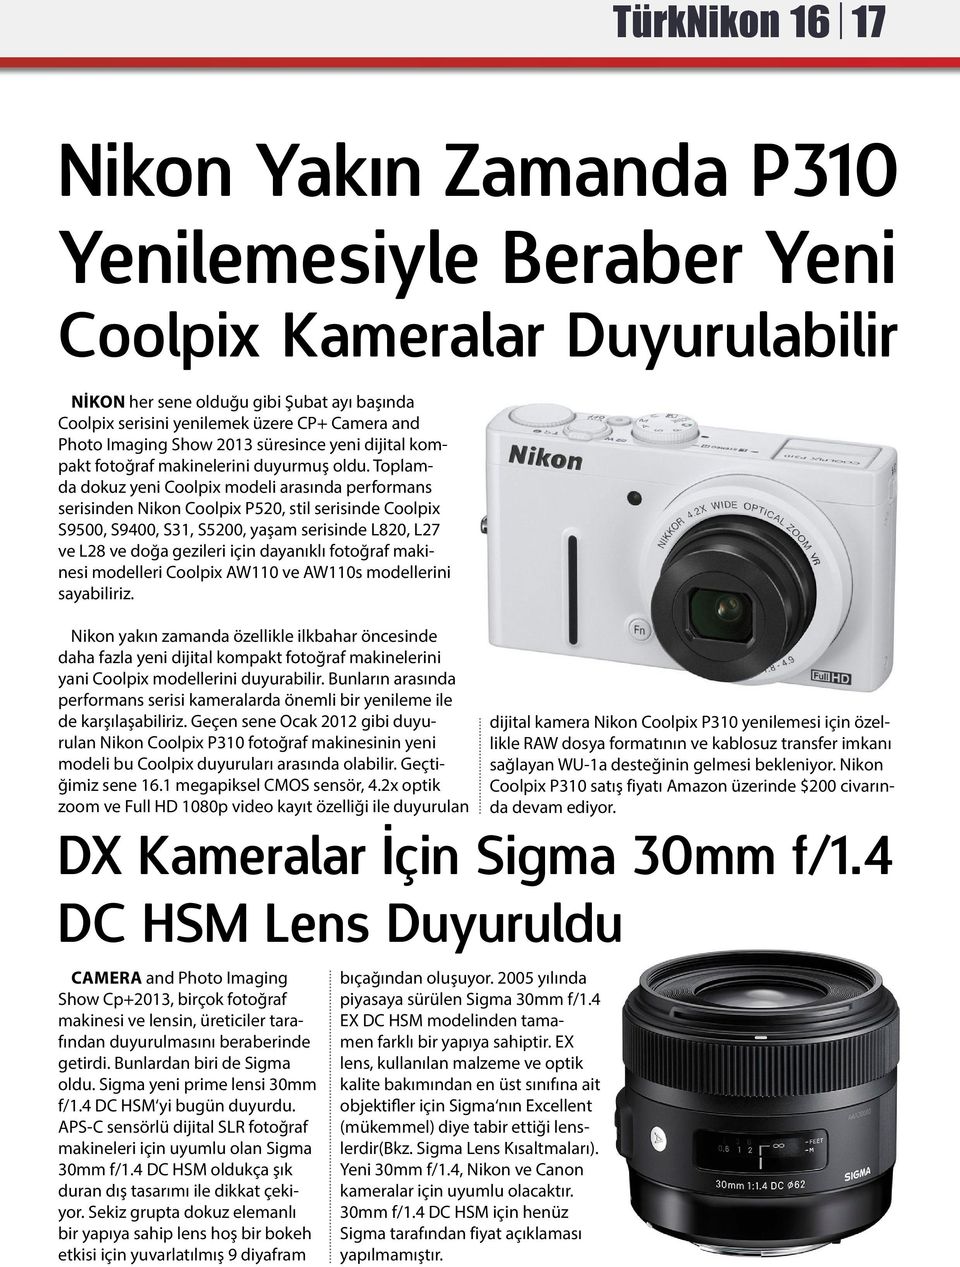 Toplamda dokuz yeni Coolpix modeli arasında performans serisinden Nikon Coolpix P520, stil serisinde Coolpix S9500, S9400, S31, S5200, yaşam serisinde L820, L27 ve L28 ve doğa gezileri için dayanıklı